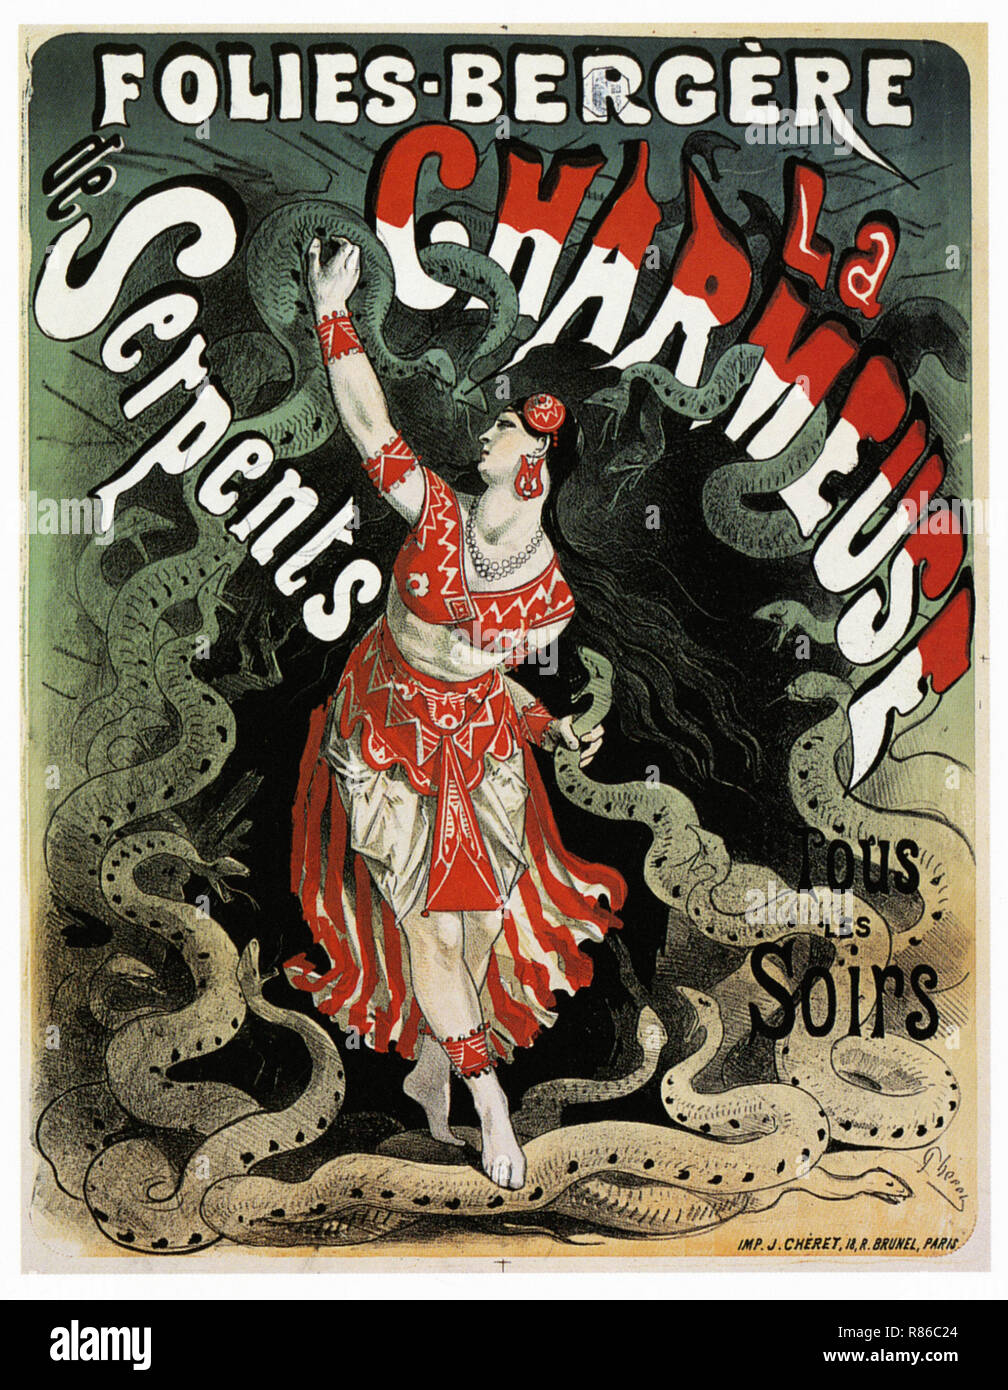 Le Charmeur de serpents Folies Bergeres - Affiche publicitaire ancienne Banque D'Images